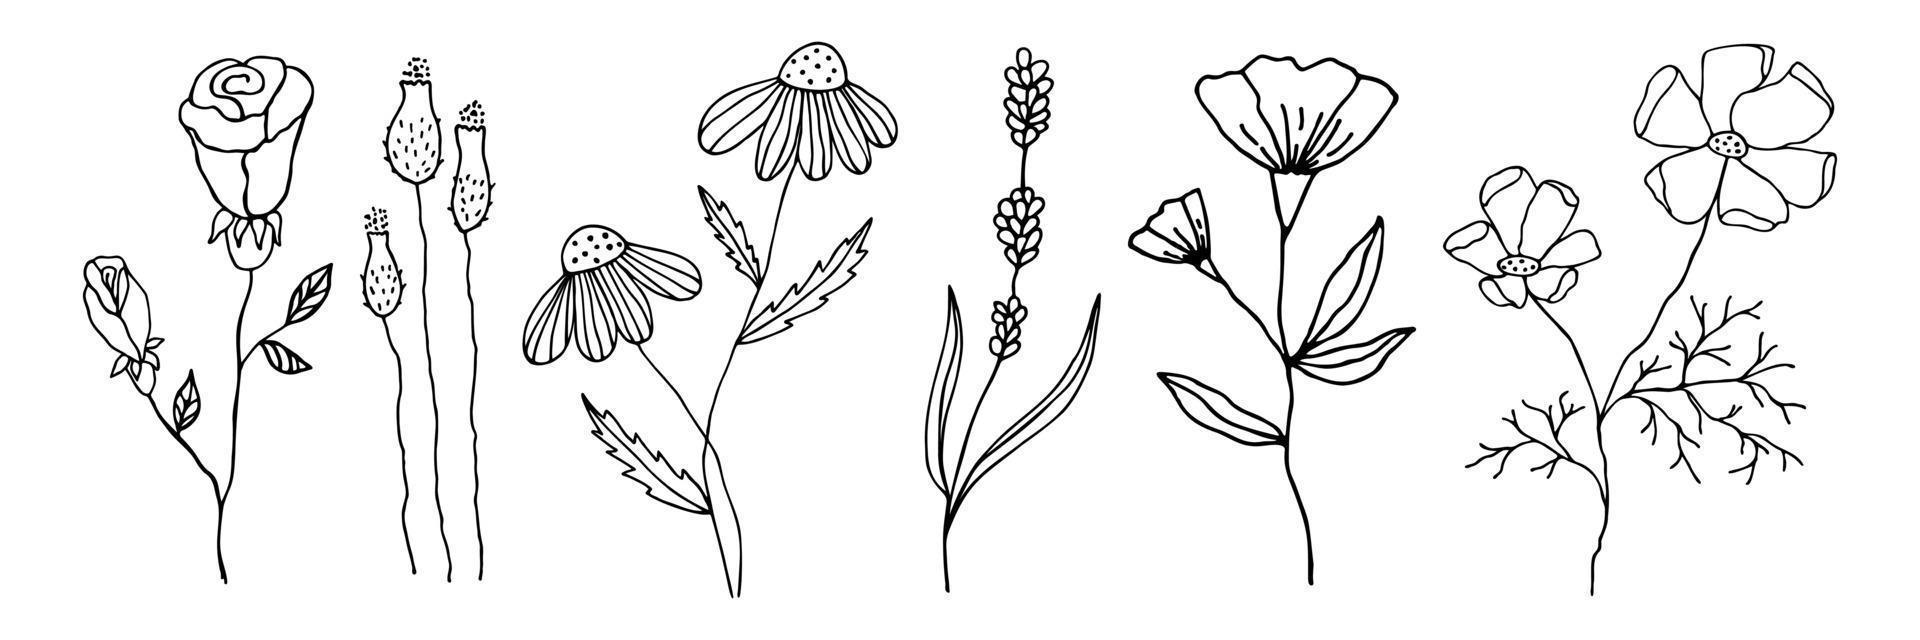 coleção de flores doodle em um estilo linear. conjunto de elementos florais para qualquer projeto. flores de contorno preto de vetor desenhadas à mão isoladas no fundo branco.